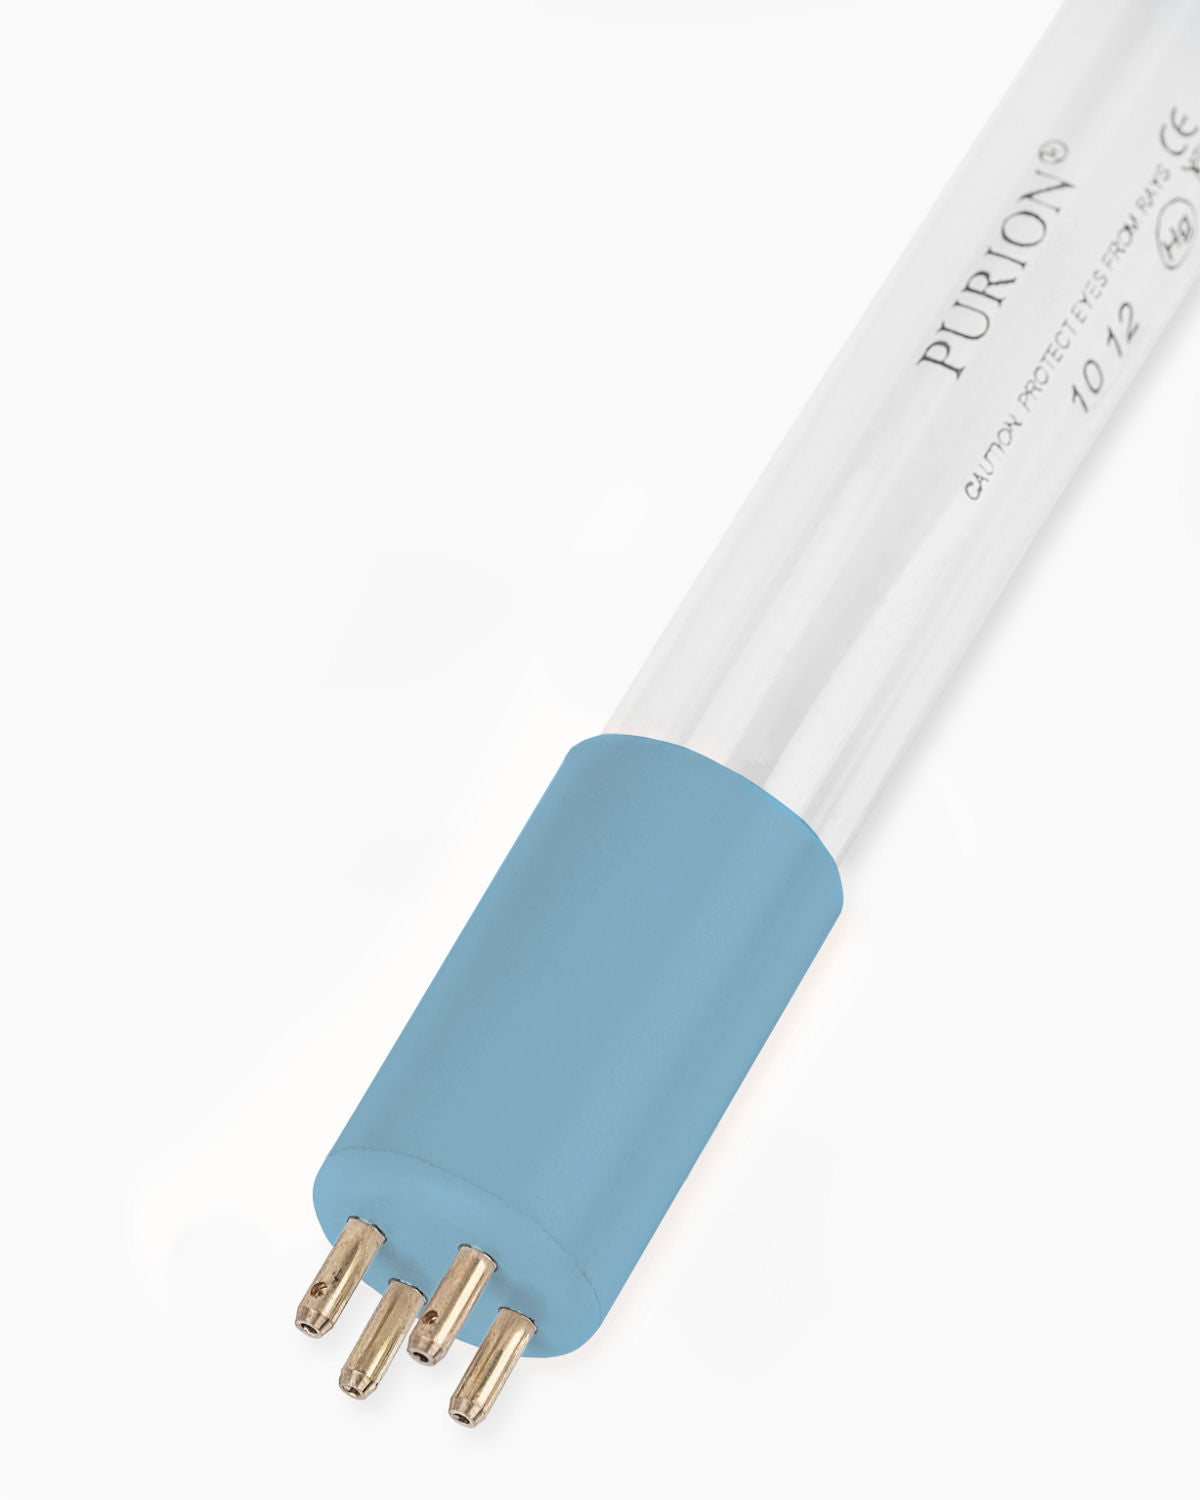 Eine blaue UV Concept GmbH PURION IBC DN225 17W SPL BS Lichtröhre auf weißem Hintergrund.